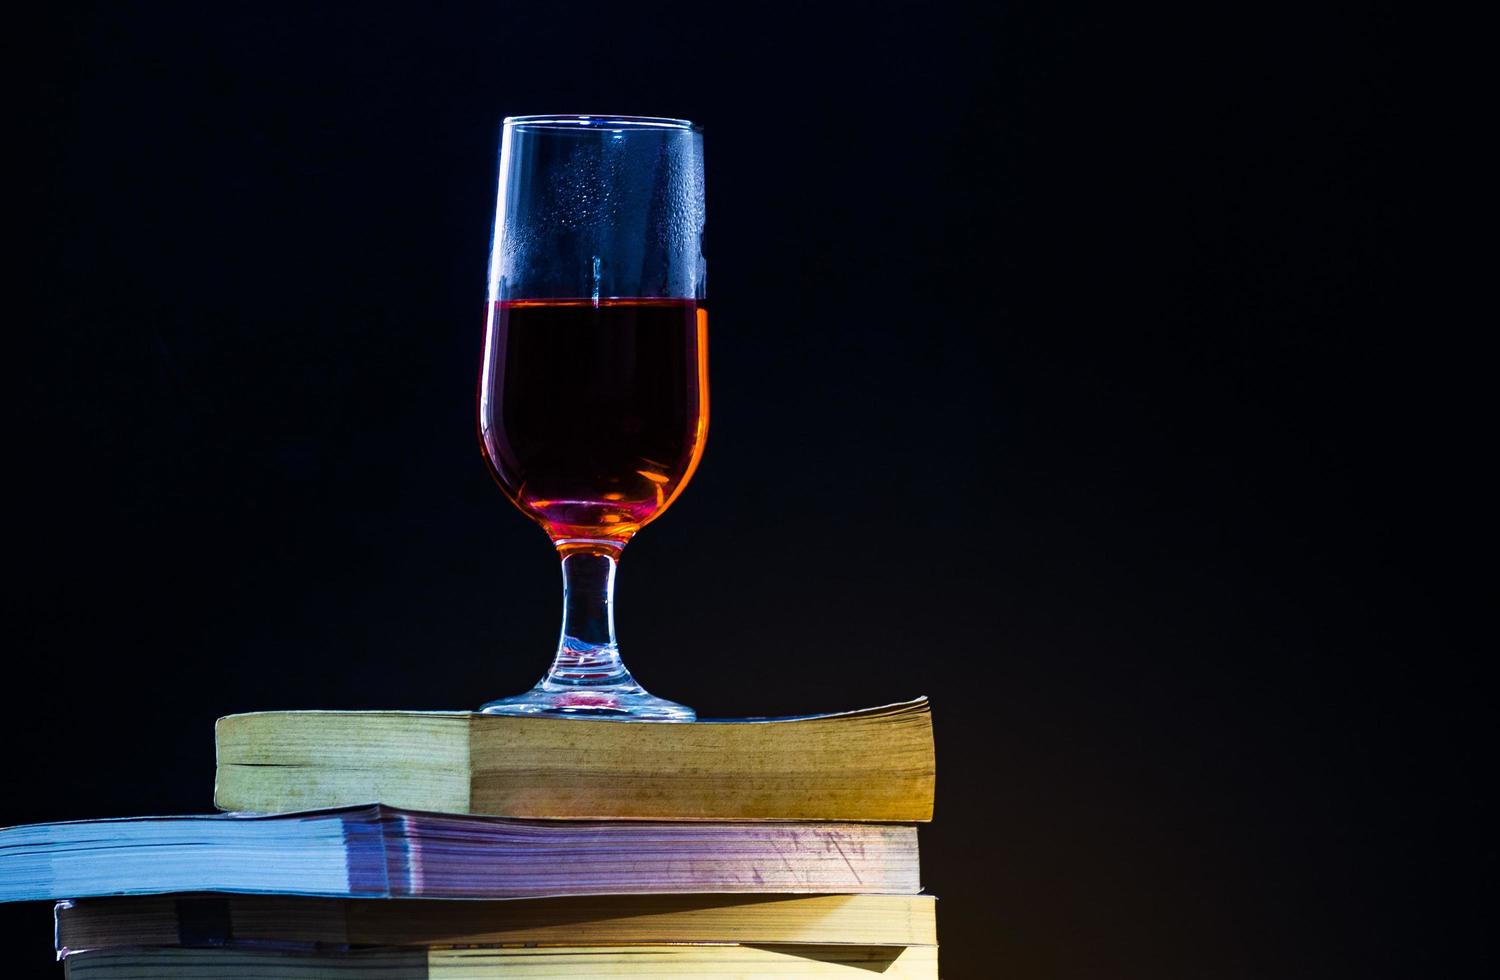 oude boeken overlappen elkaar op een zwarte achtergrond en met gedimd licht een glas rode wijn erop. foto